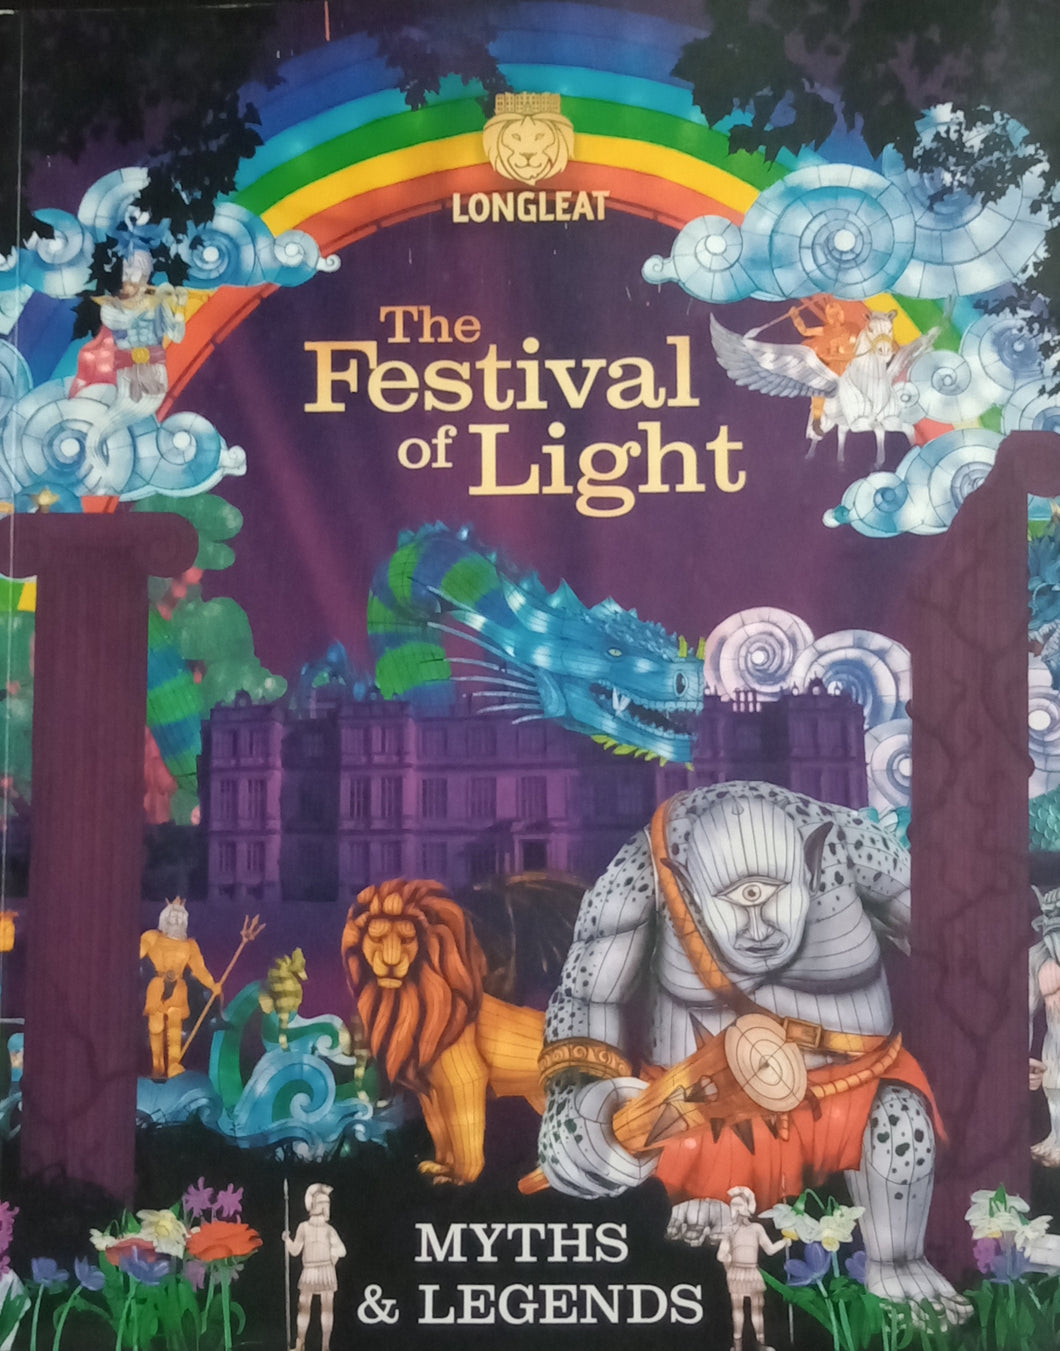 The festival of light